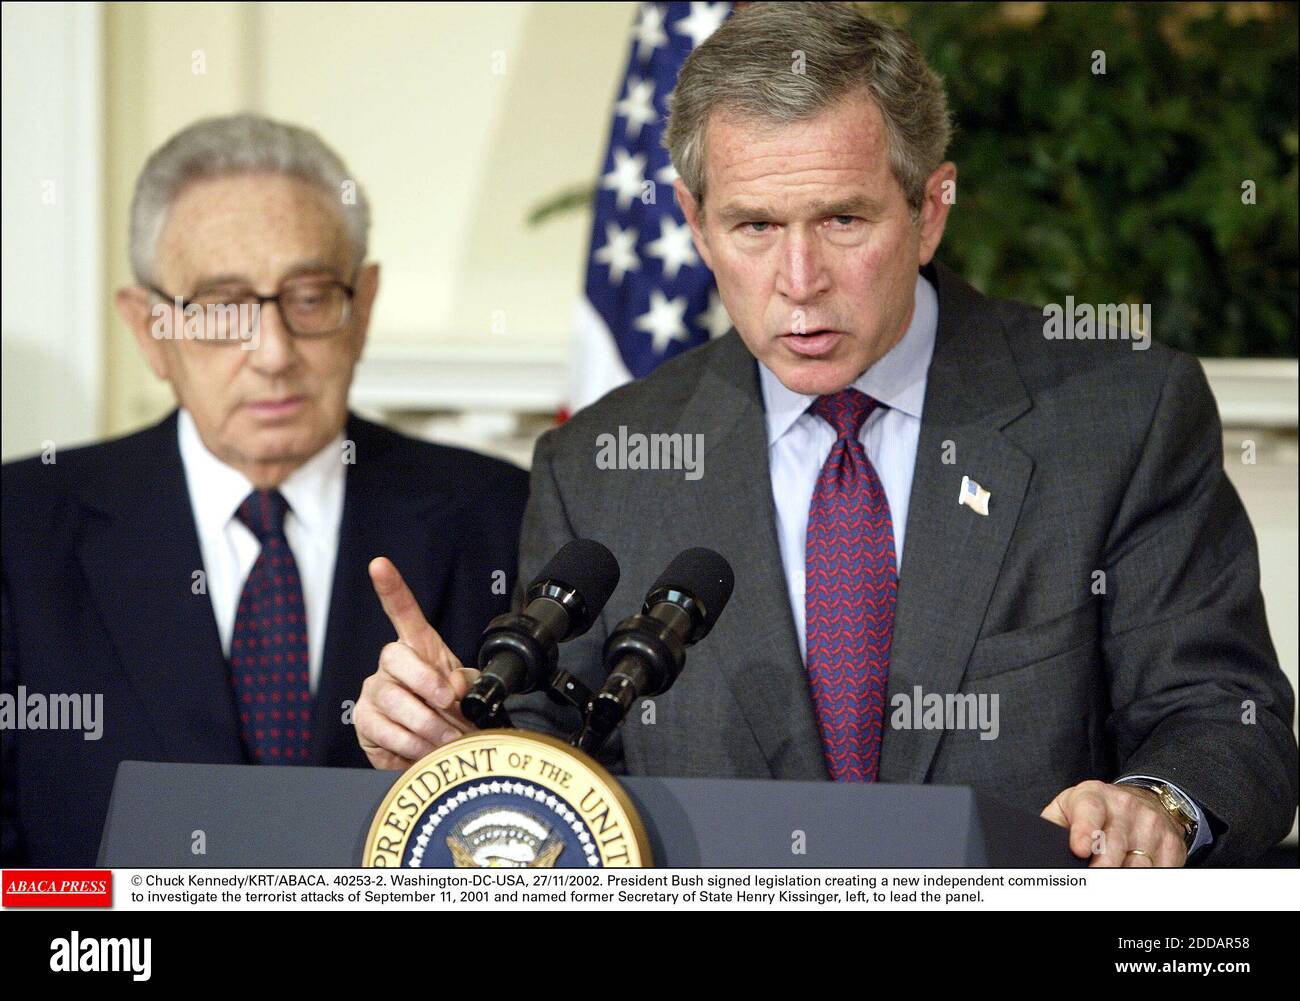 NESSUN FILM, NESSUN VIDEO, NESSUNA TV, NESSUN DOCUMENTARIO - © CHUCK KENNEDY/KRT/ABACA. 40253-2. Washington-DC-USA, 27/11/2002. Il presidente Bush ha firmato una legislazione che crea una nuova commissione indipendente per indagare sugli attacchi terroristici del 11 settembre 2001 e nominato ex segretario di Stato Henry Kissinger, sinistra Foto Stock